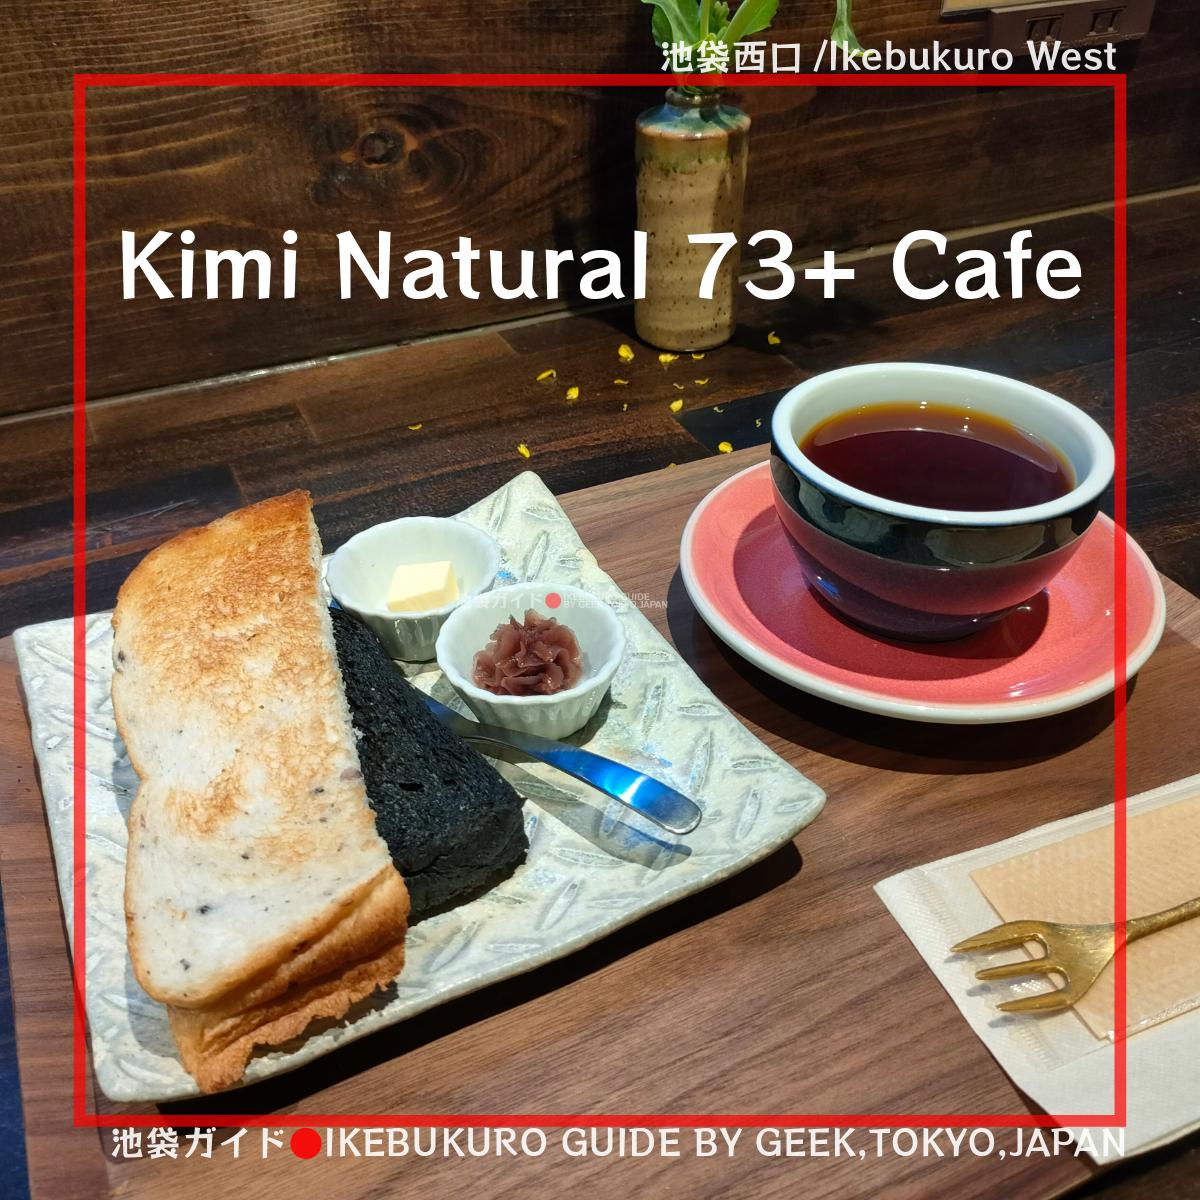 旅館の和カフェ！Kimi Natural 73+ Cafe